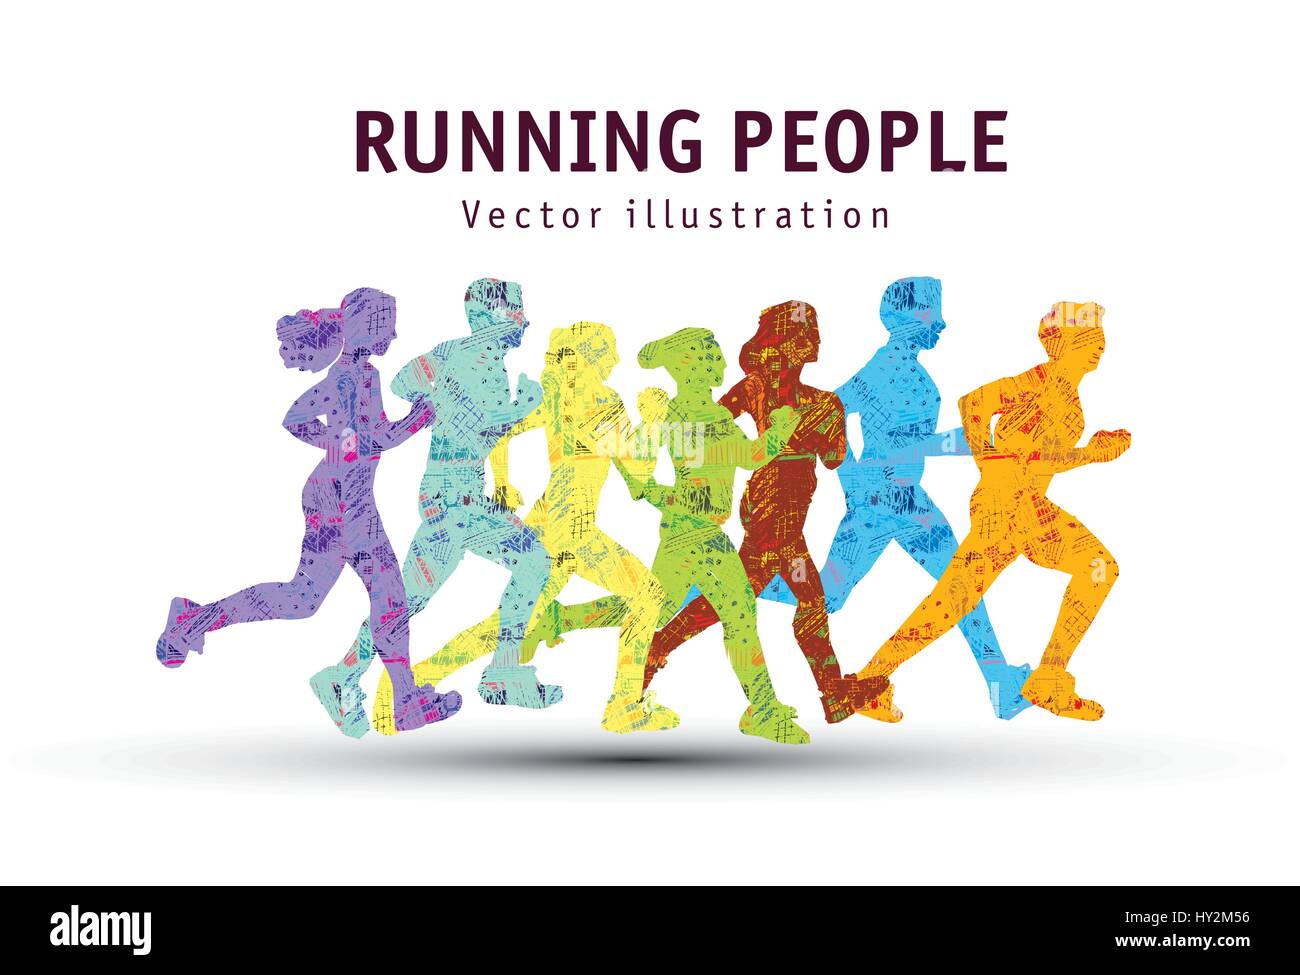 Silhouette people running marathon Banque d'images vectorielles - Alamy